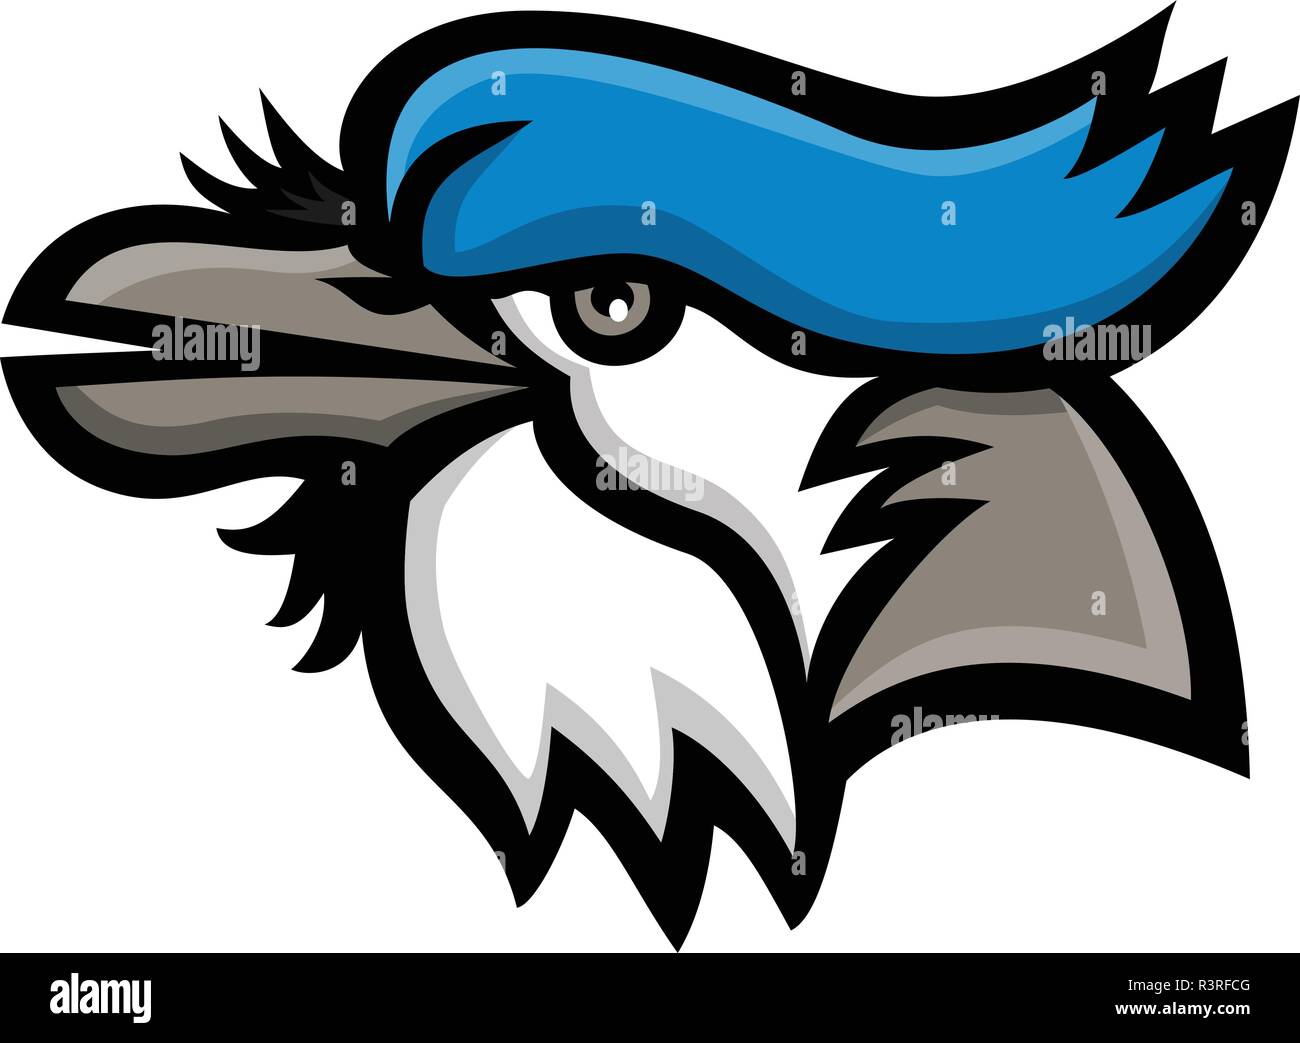 Maskottchen Symbol Abbildung: Kopf eines Blue Jay (Cyanocitta cristata) ist ein Schmetterling (Tagfalter) aus der Familie der Corvidae, aus Nordamerika Suchen anzeigen Stock Vektor